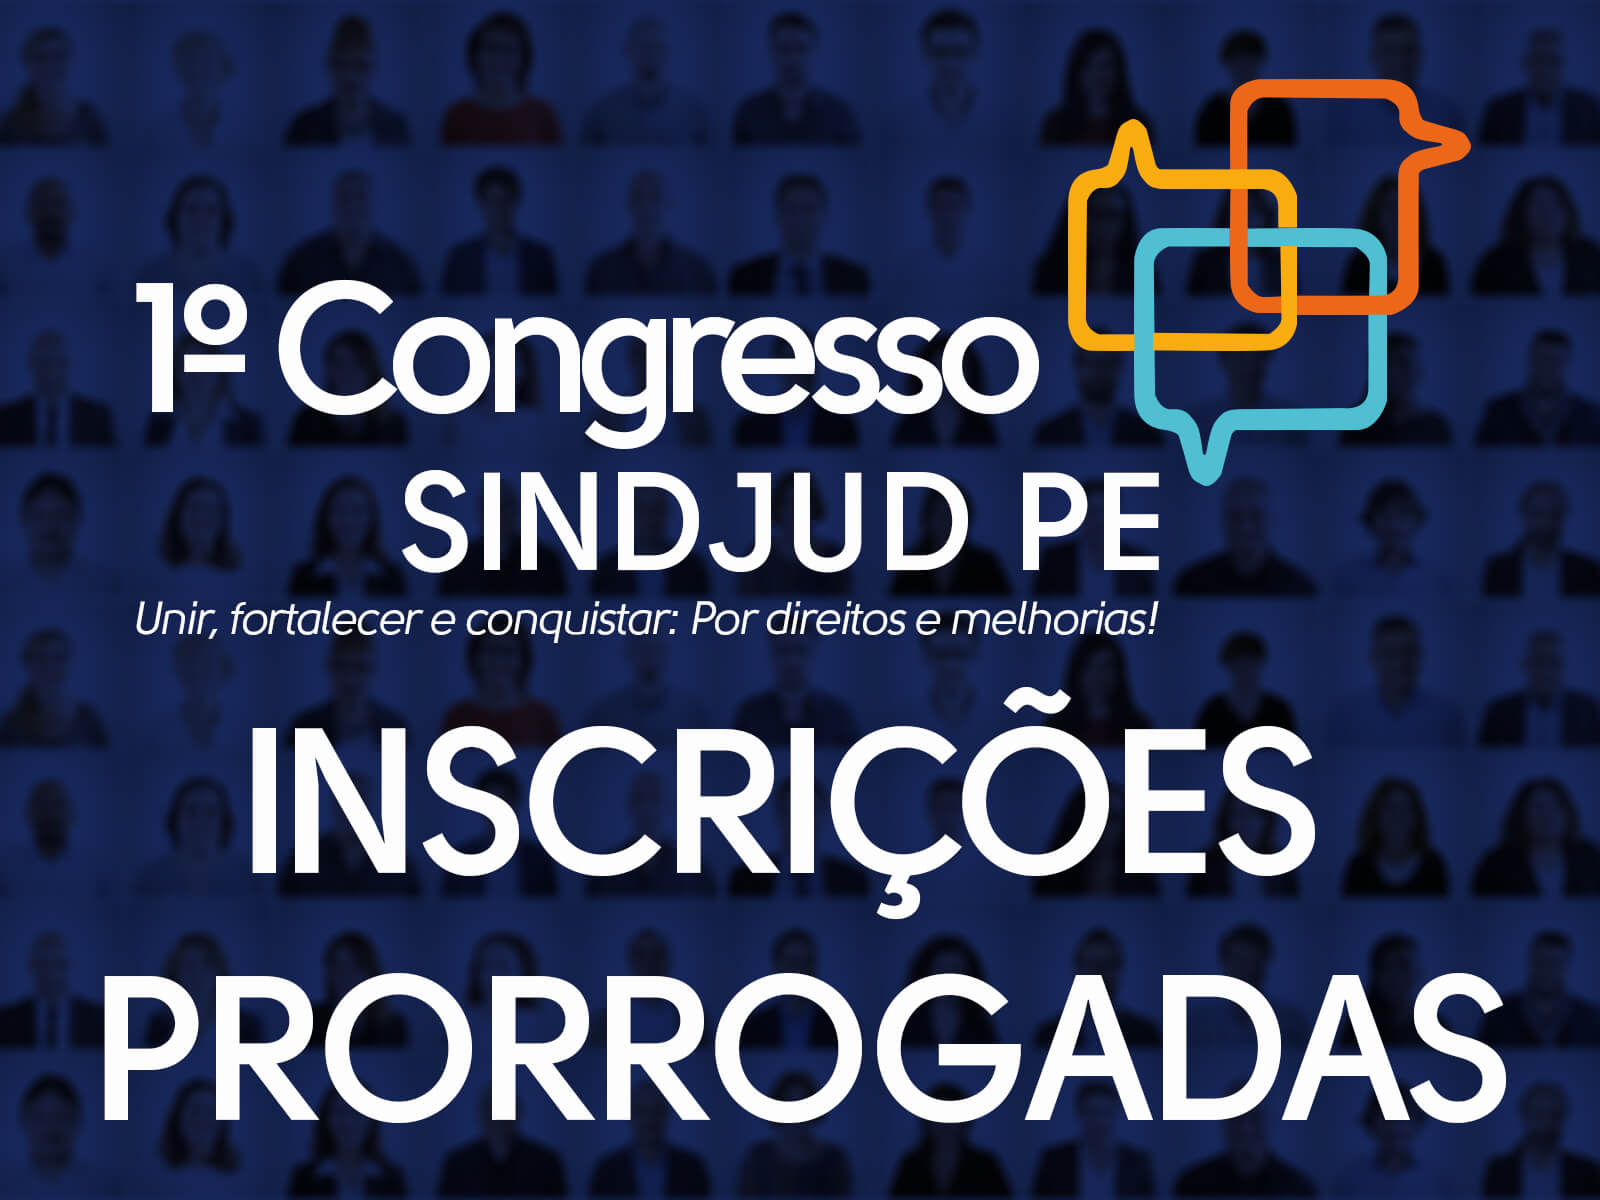 Inscrições para o 1° Congresso SINDJUD PE são prorrogadas até 15/09